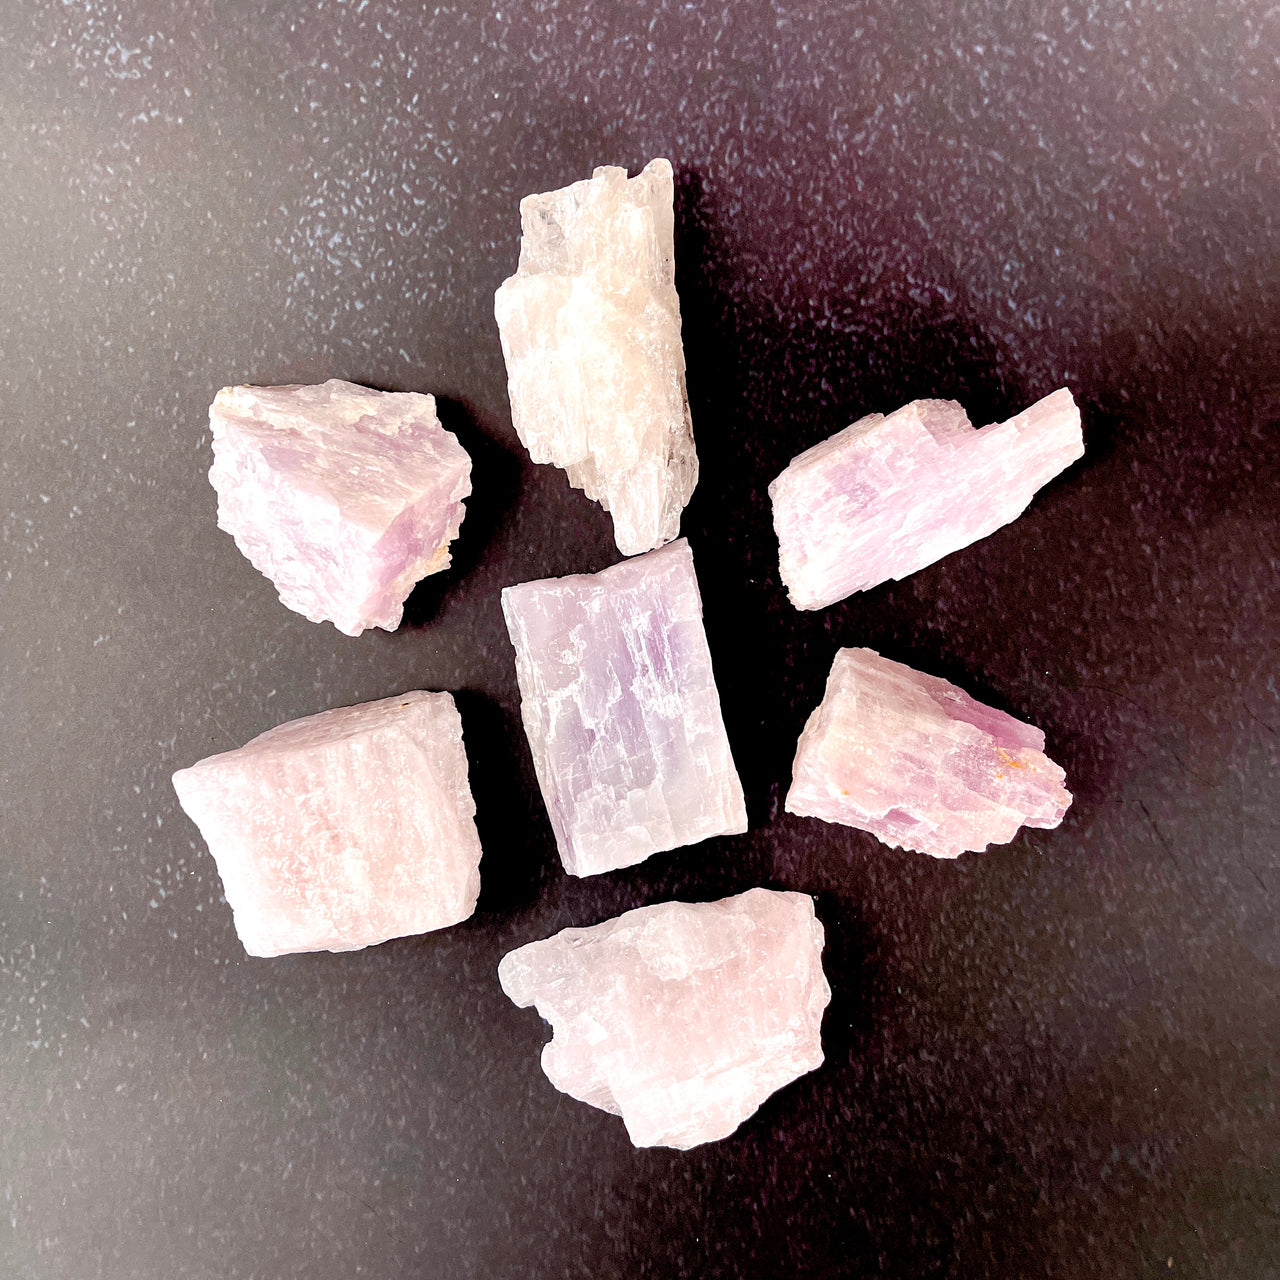 1 PINK KUNZITE Rough Natural Crystal Stone Gemstone #PK02